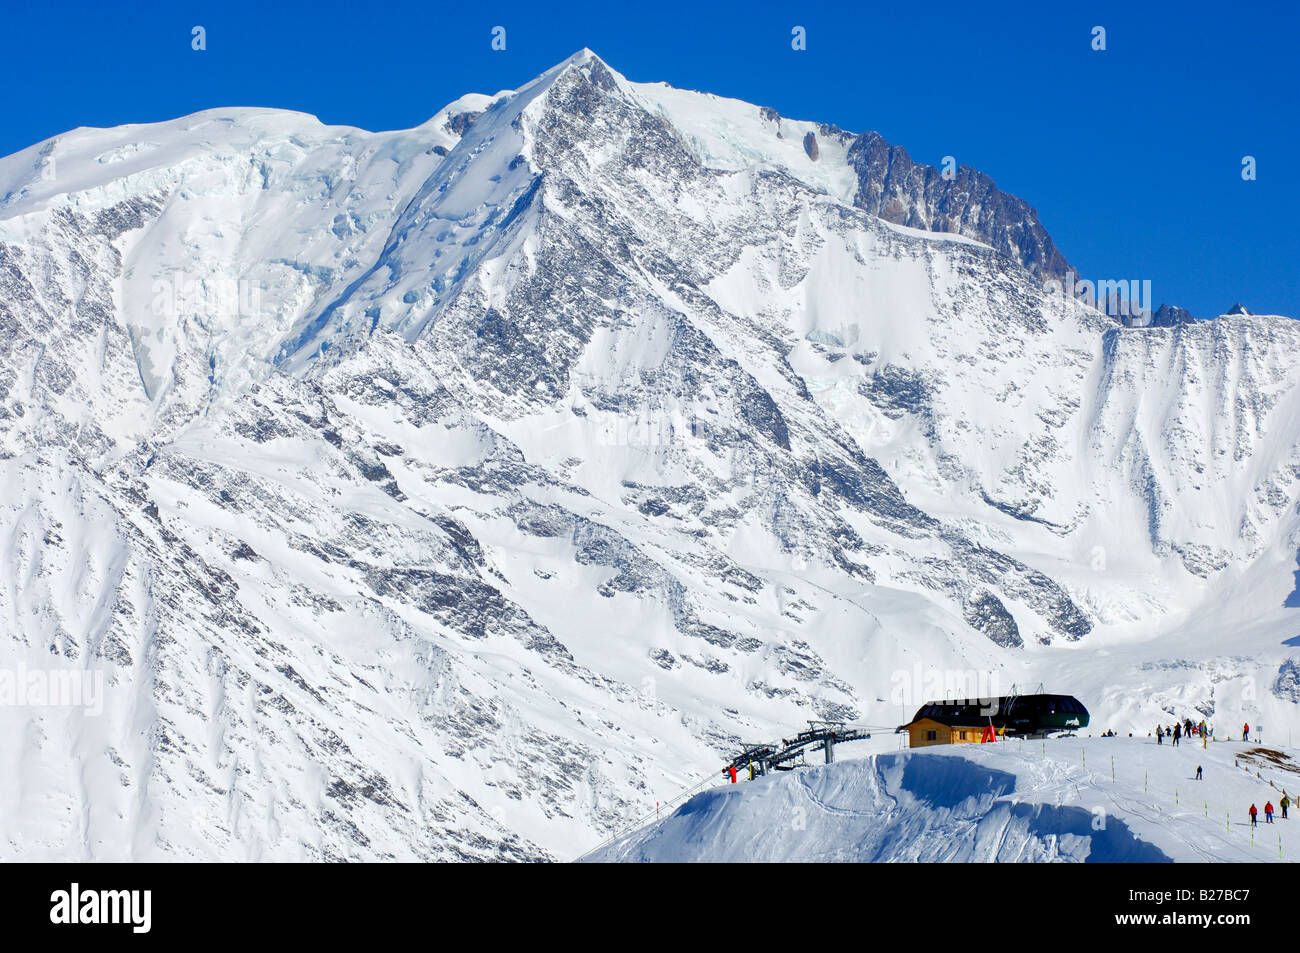 Domaine skiable de Saint Gervais au pied du massif du Mont blanc, St Gervais, haute Savoie, France Banque D'Images